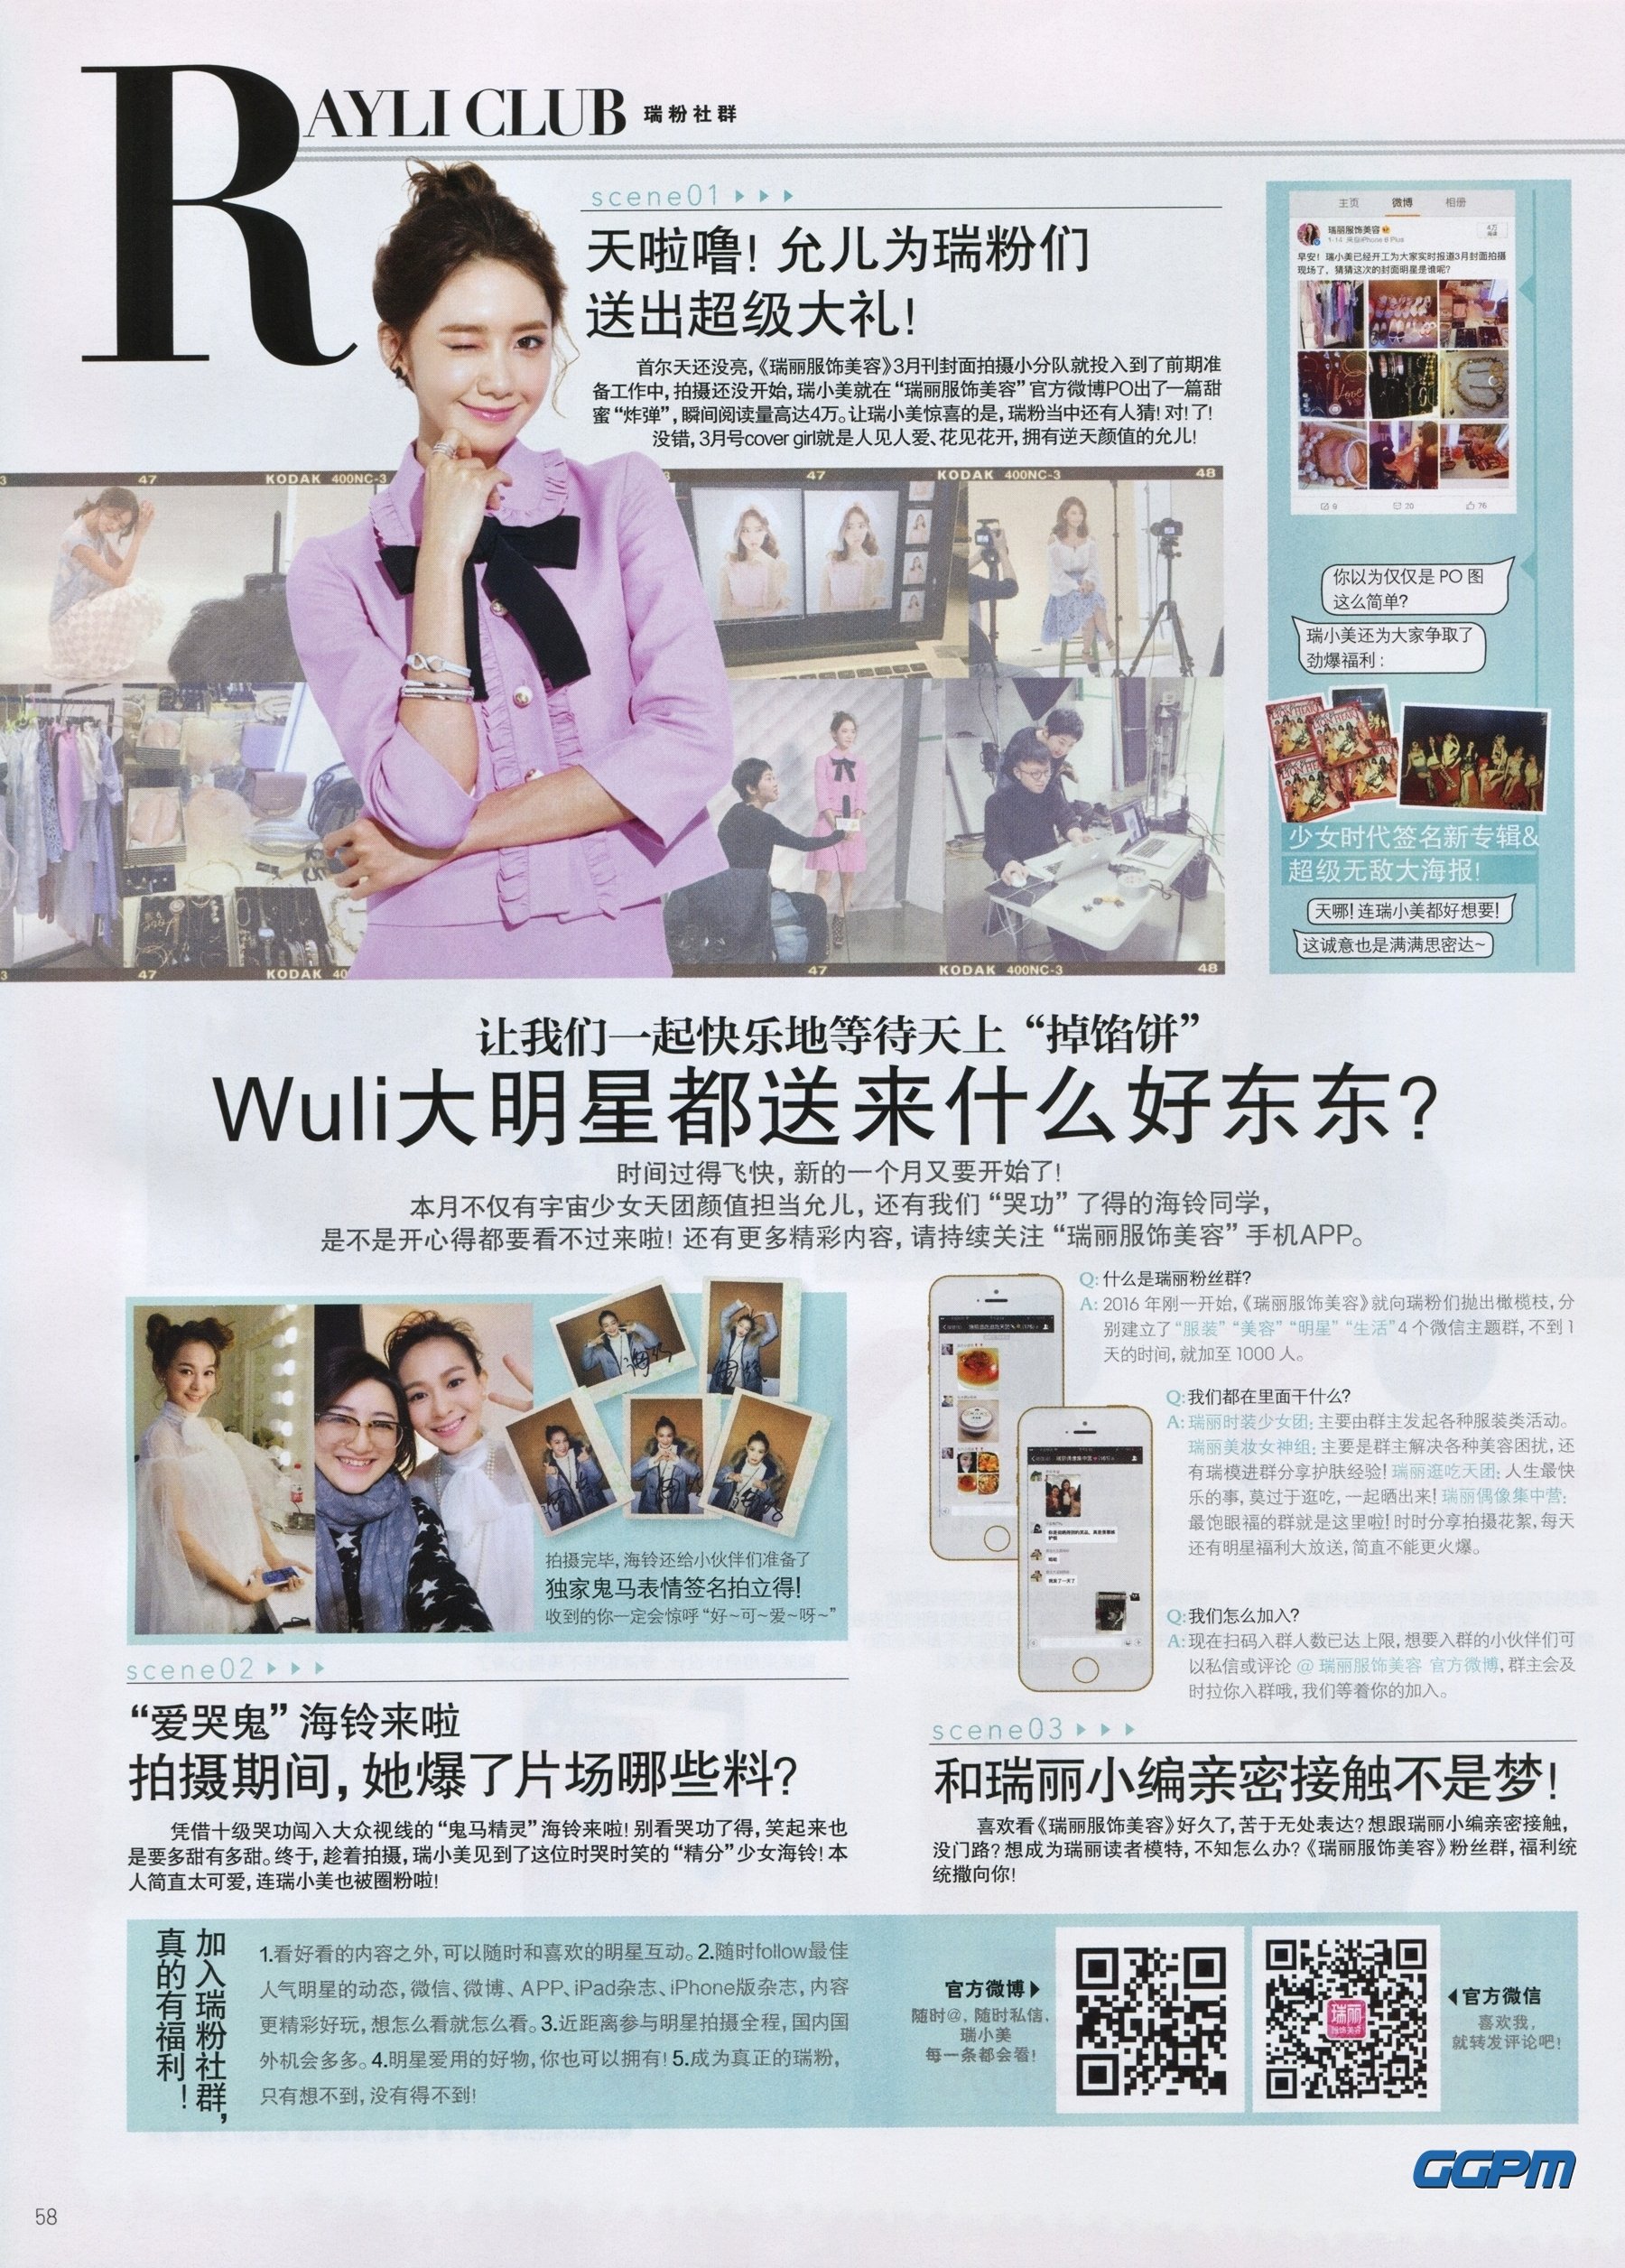 [PIC][17-02-2016]YoonA xuất hiện trên trang bìa ấn phẩm tháng 3 của tạp chí Trung Quốc - "Ray Li" FA59xb9GEI-3000x3000